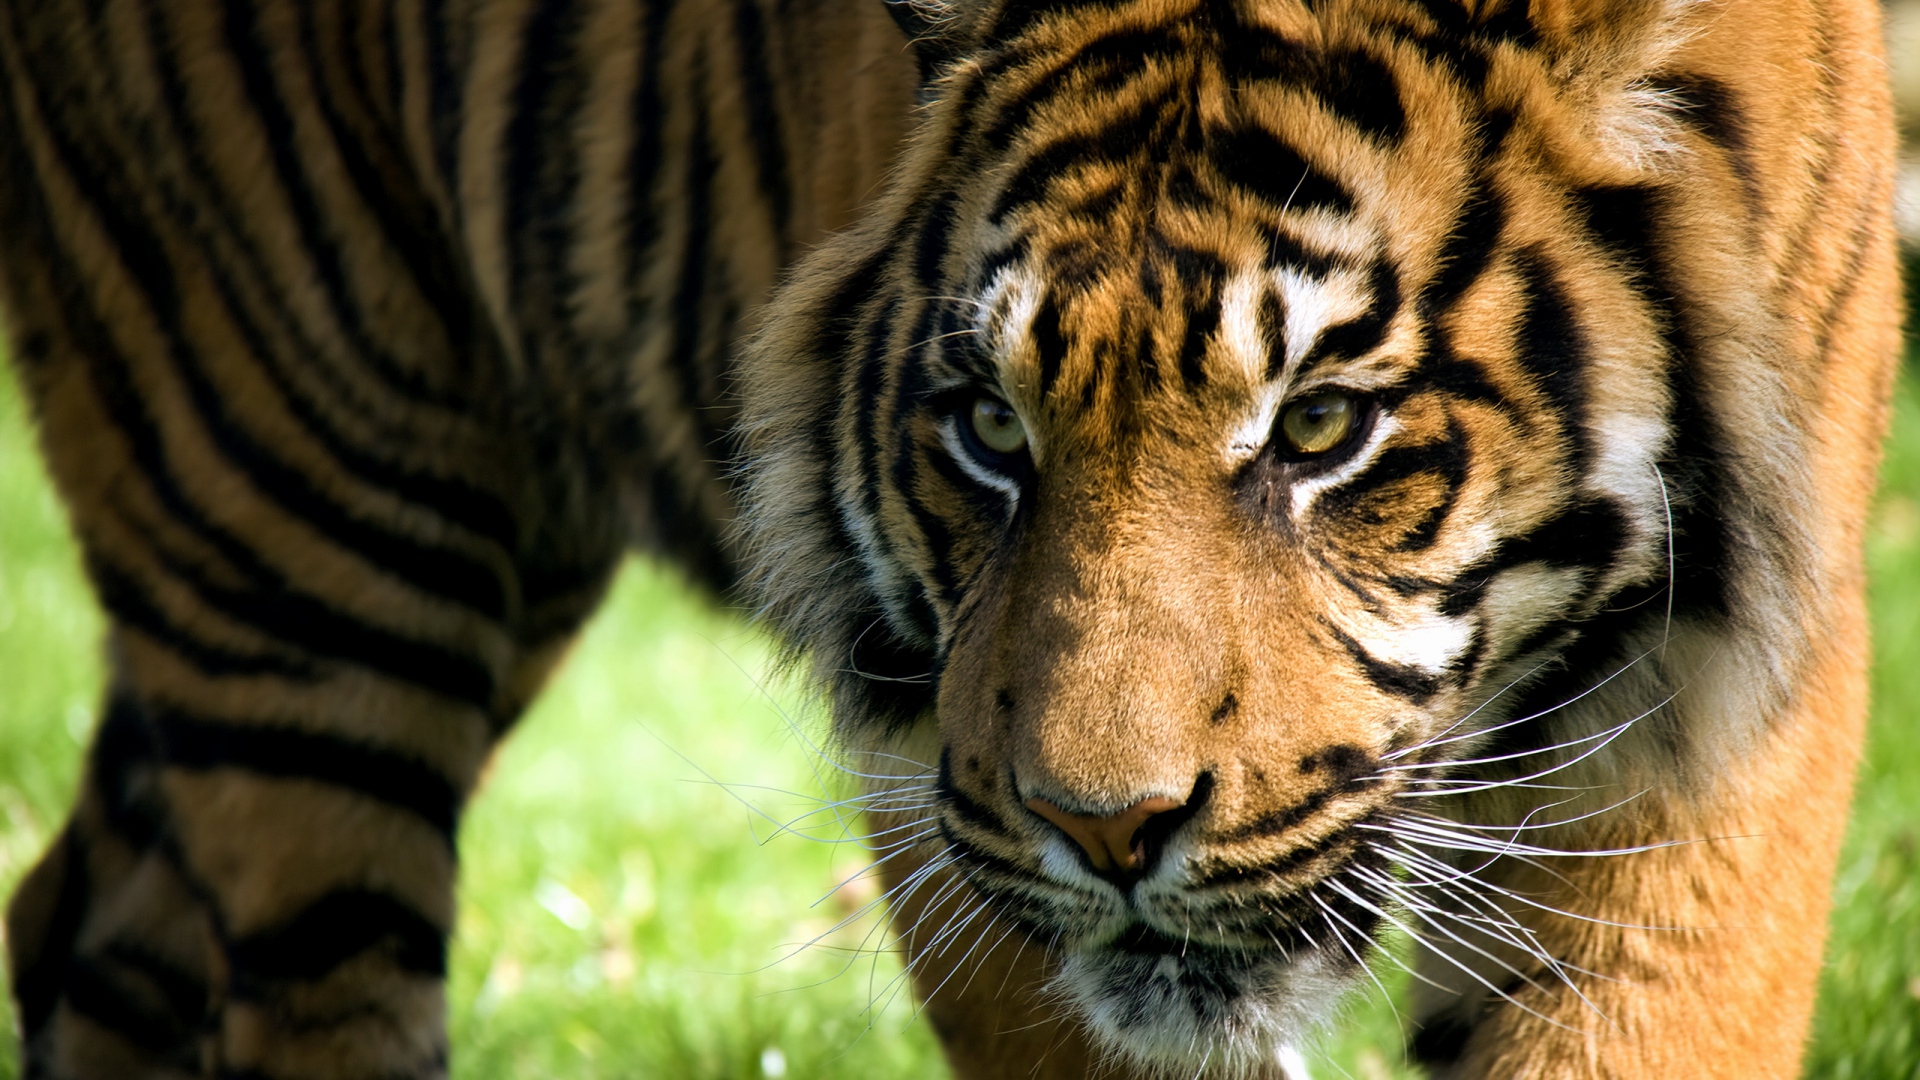 aggressive tapete,tiger,tierwelt,landtier,bengalischer tiger,sibirischer tiger